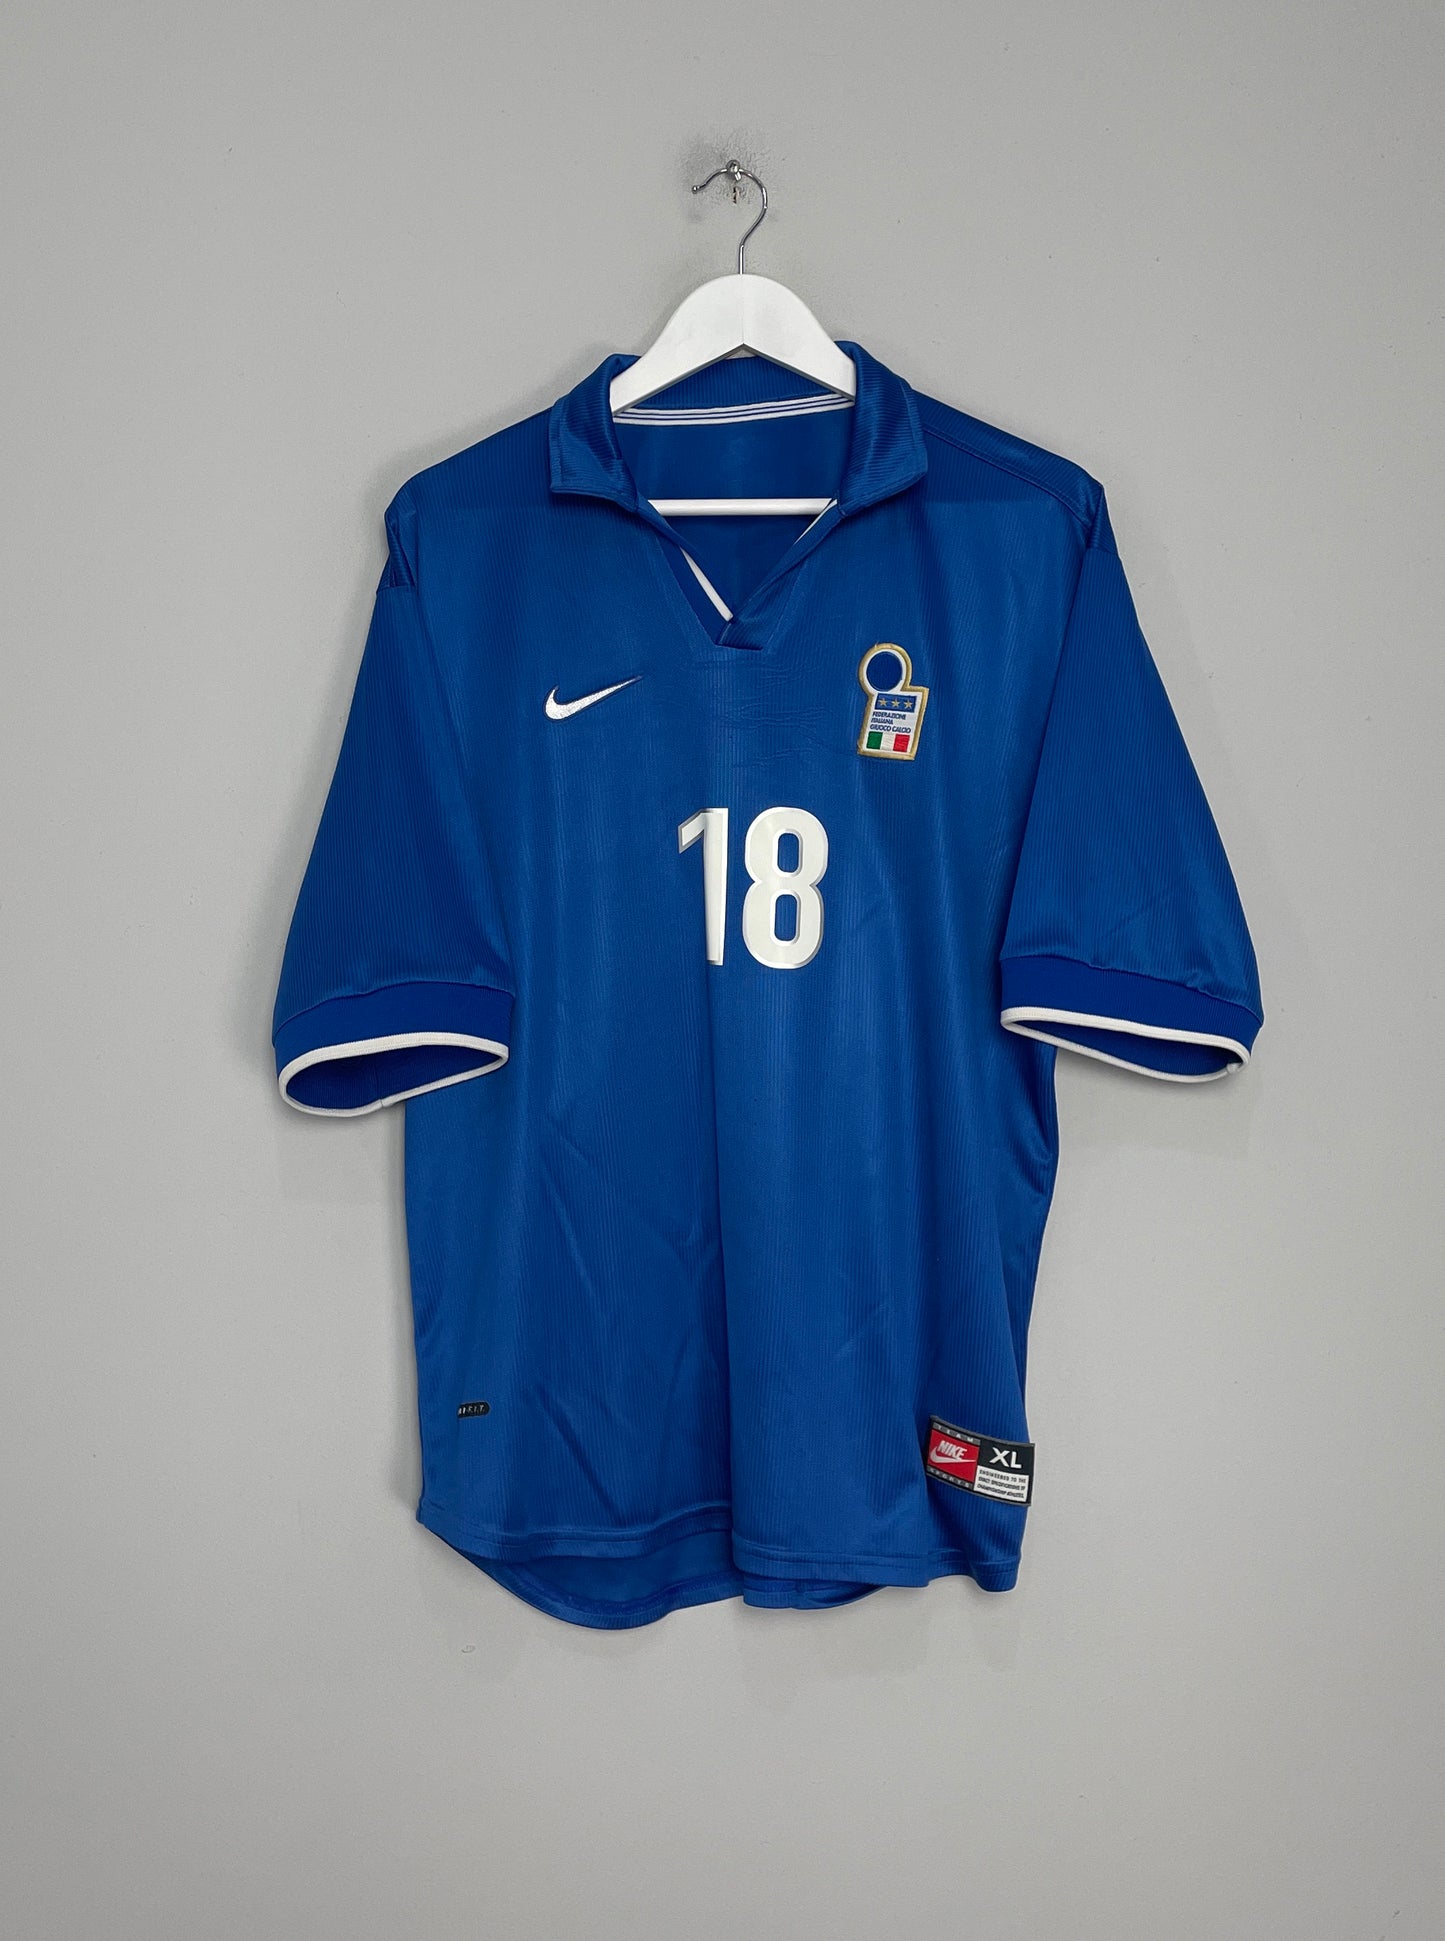 1997/98 ITALY R.BAGGIO #18 HOME SHIRT (XL) NIKE